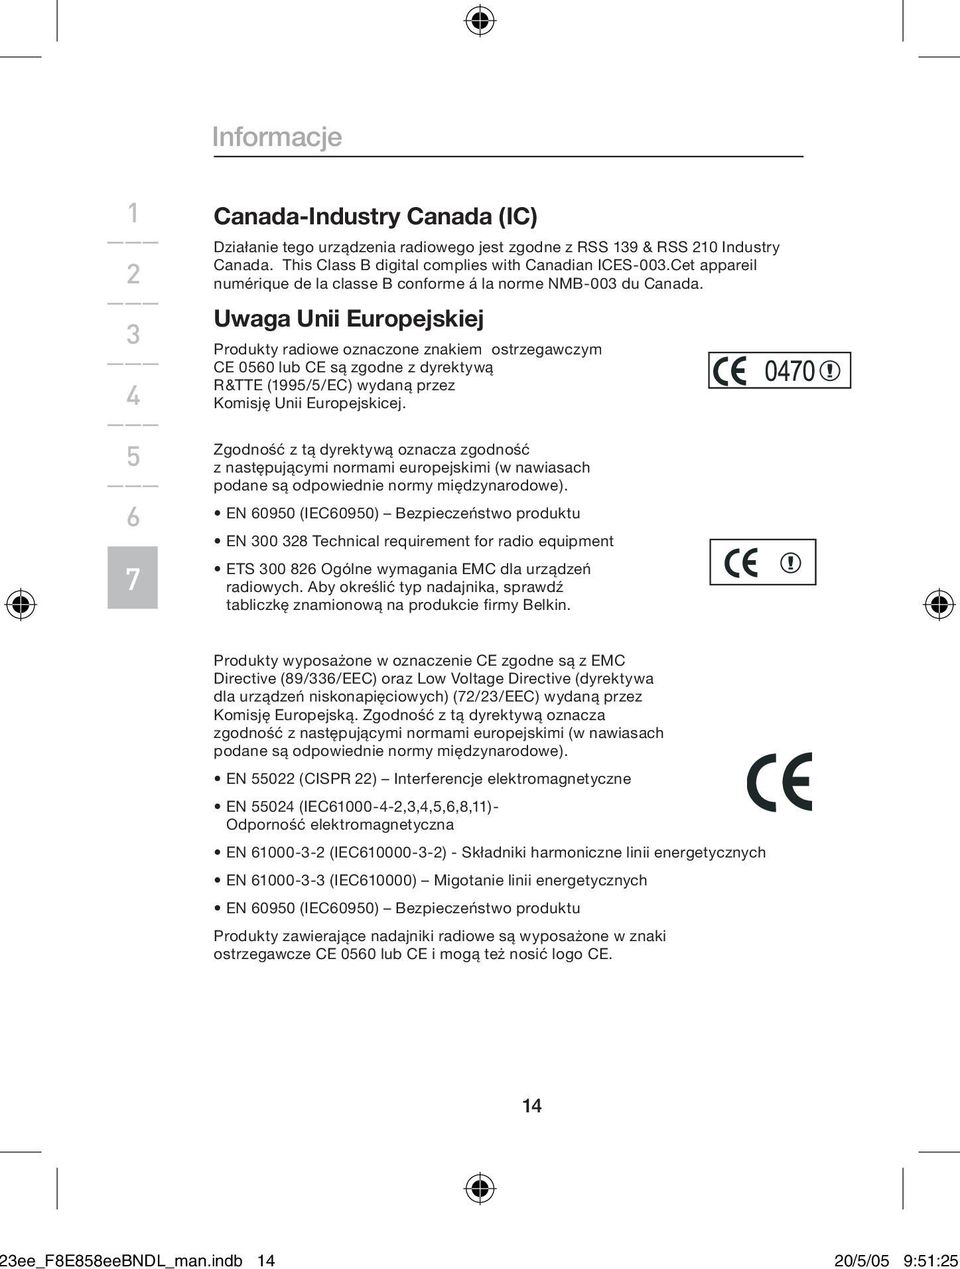 Uwaga Unii Europejskiej Produkty radiowe oznaczone znakiem ostrzegawczym CE 00 lub CE są zgodne z dyrektywą R&TTE (99//EC) wydaną przez Komisję Unii Europejskicej.